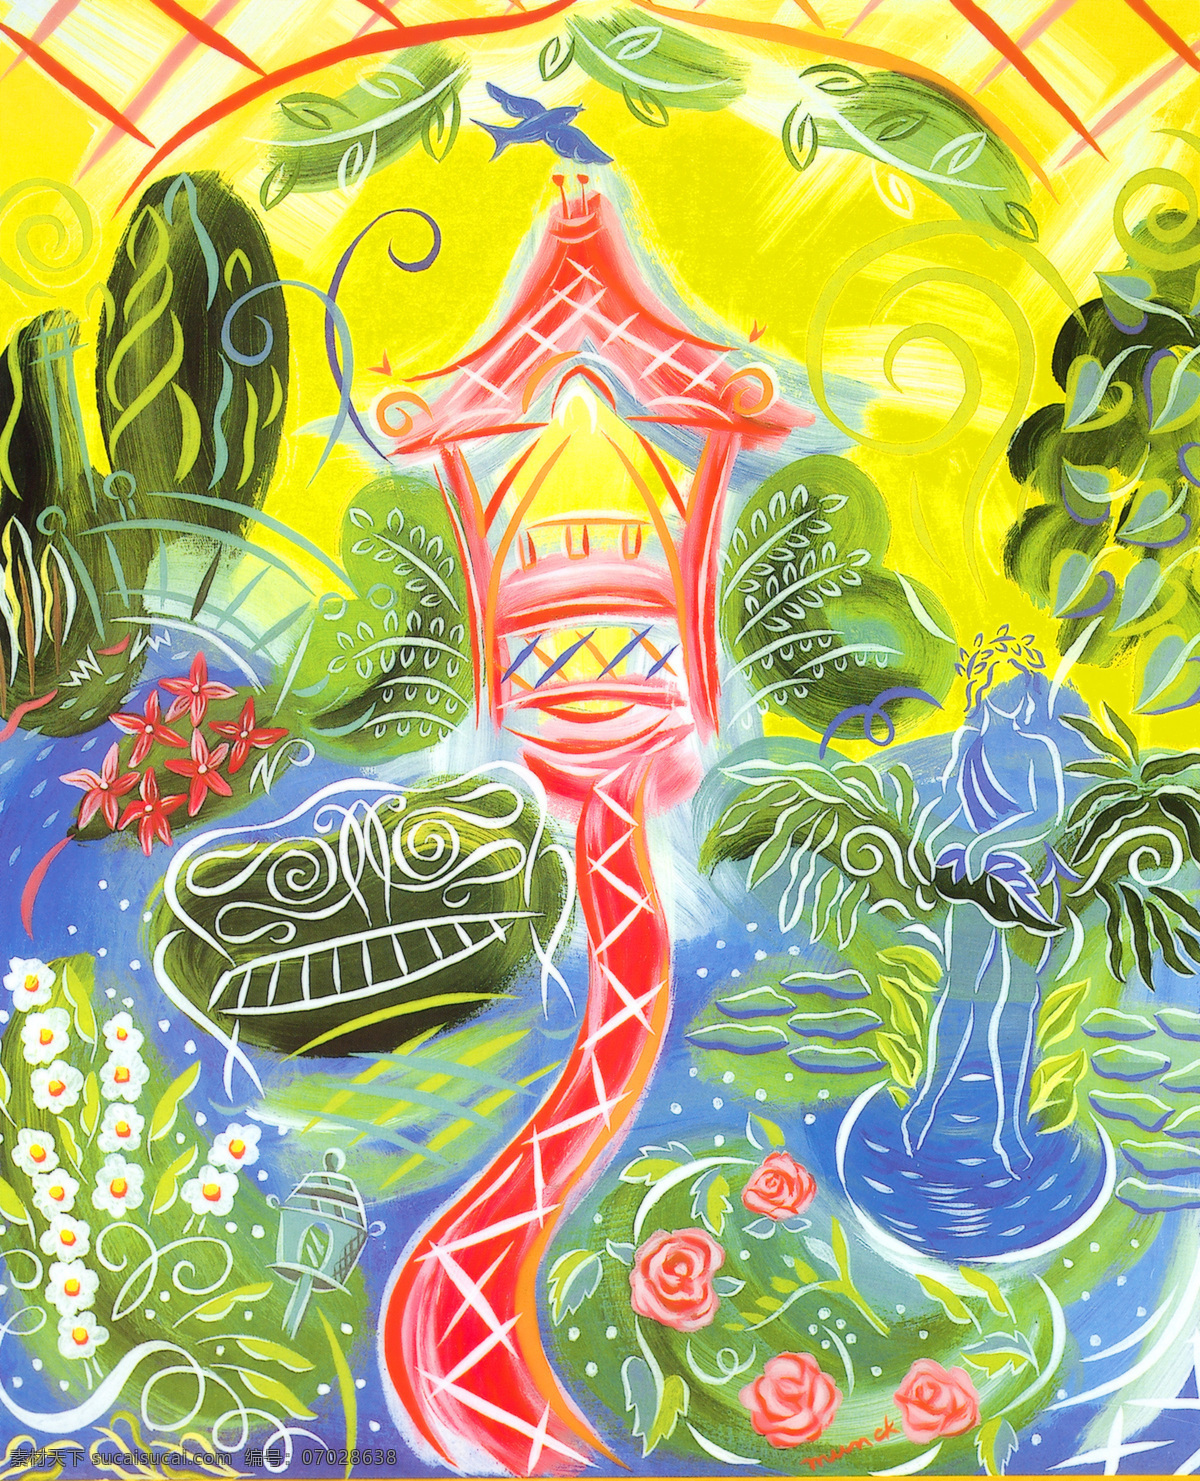 抽象 园林 插画 抽象画 公园 绘画书法 文化艺术 艺术 园艺 抽象园林 画作 温室 植被 植物 插画集